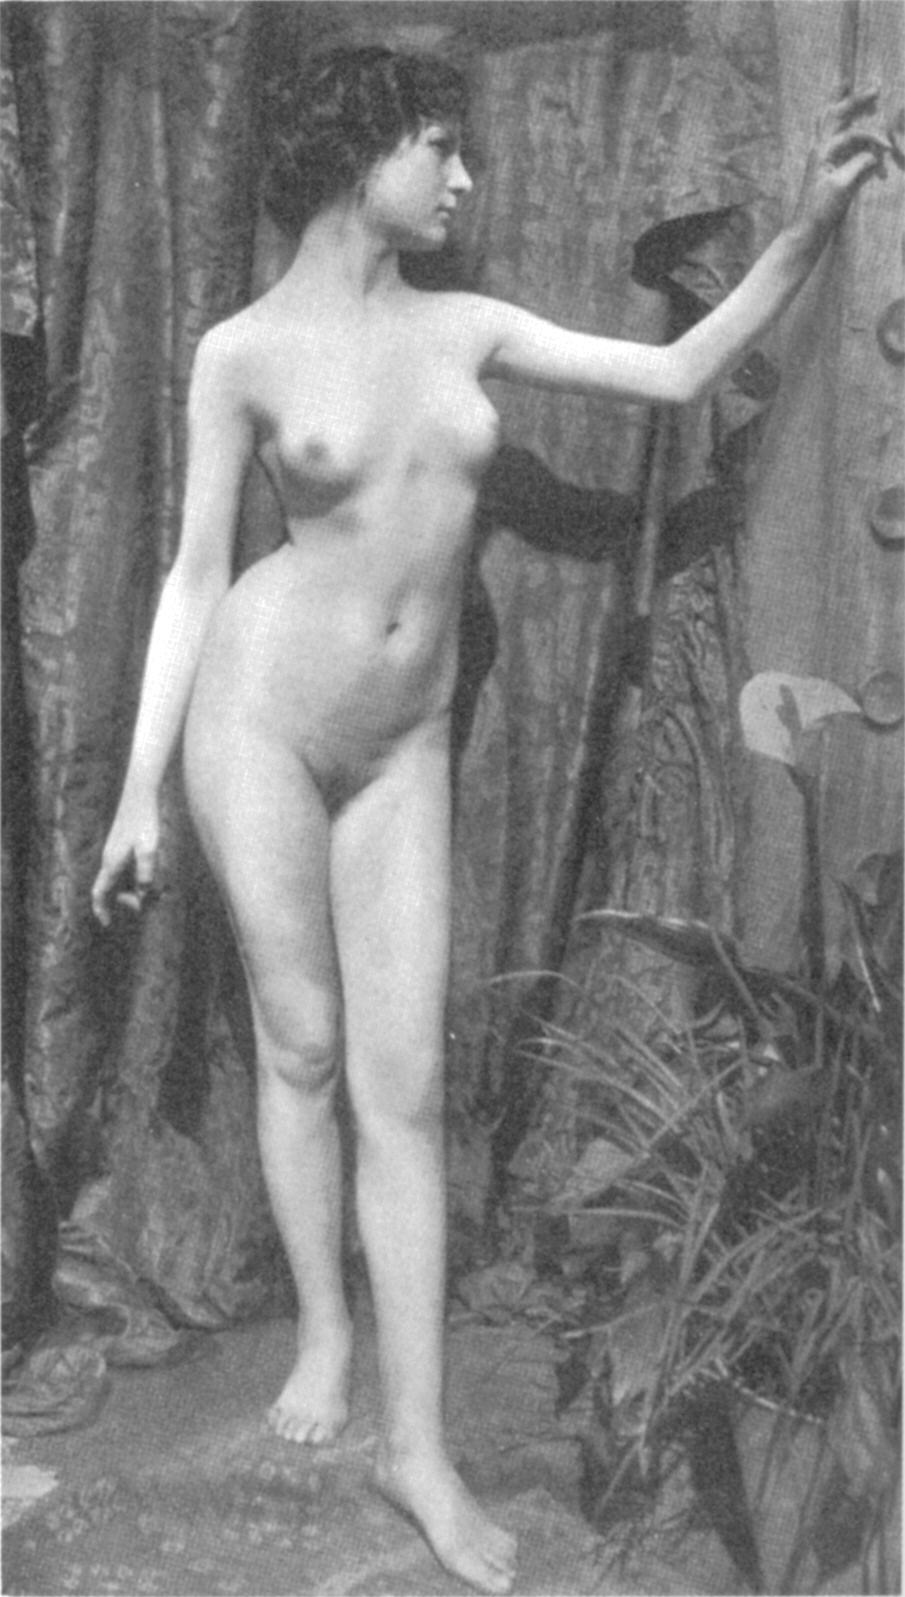 Antique erotic photograph 10